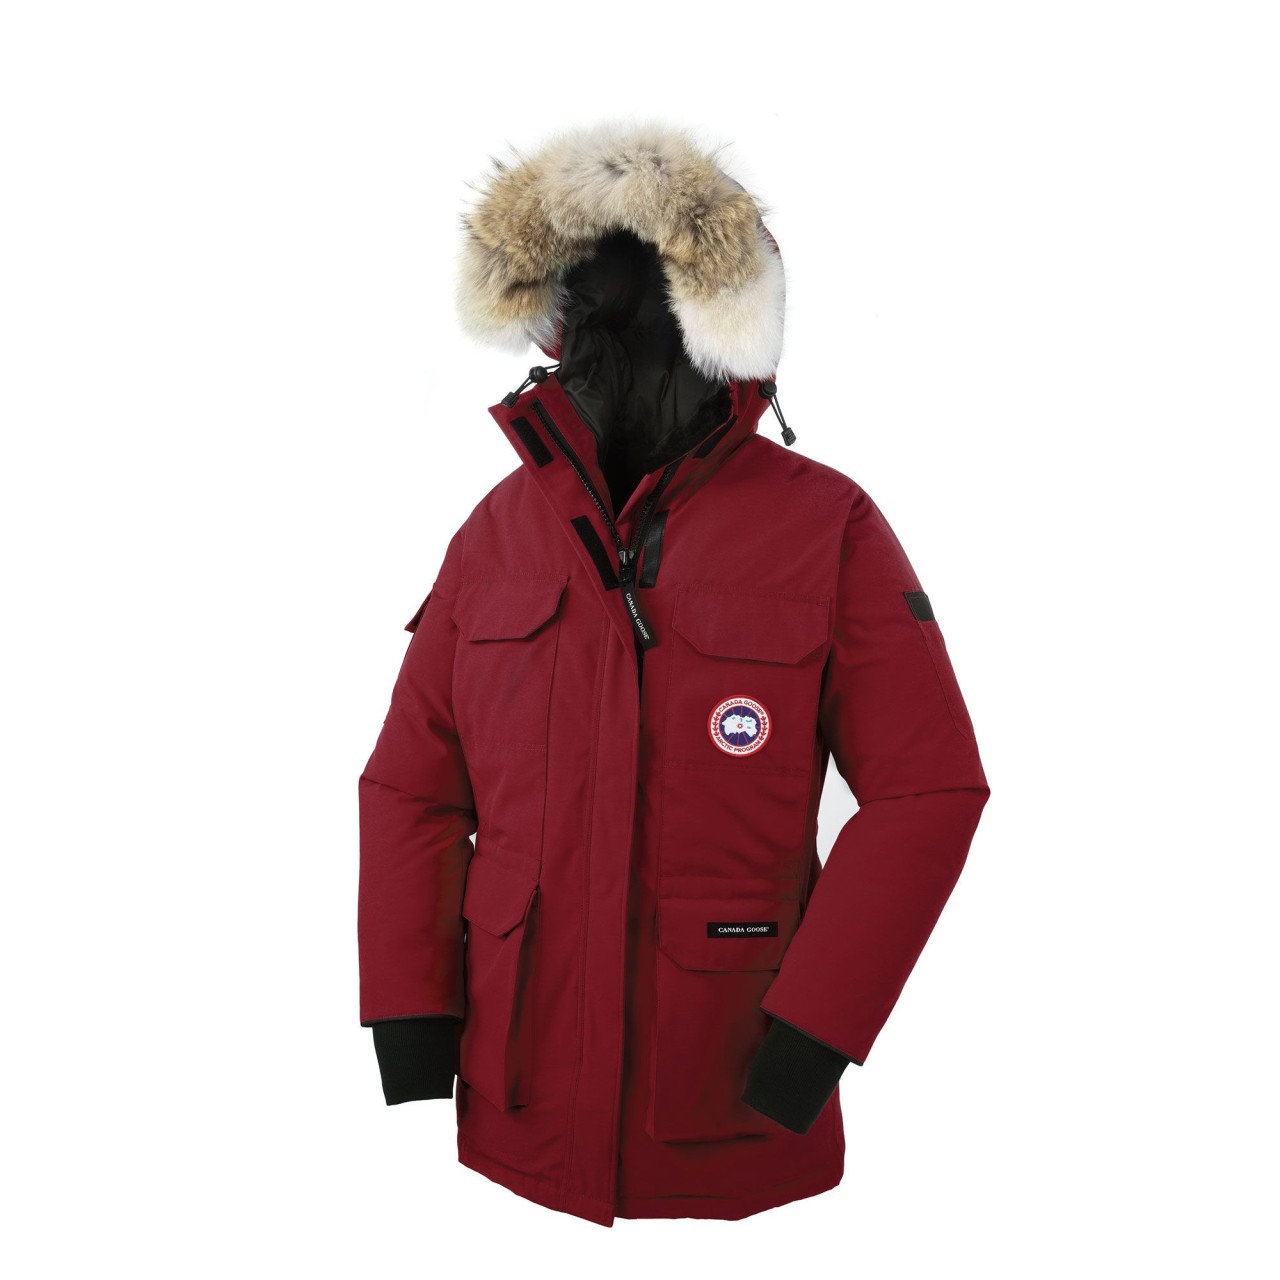 Canada Goose vest sale authentic - canada goose jacket sale | canada goose jackets outlet store